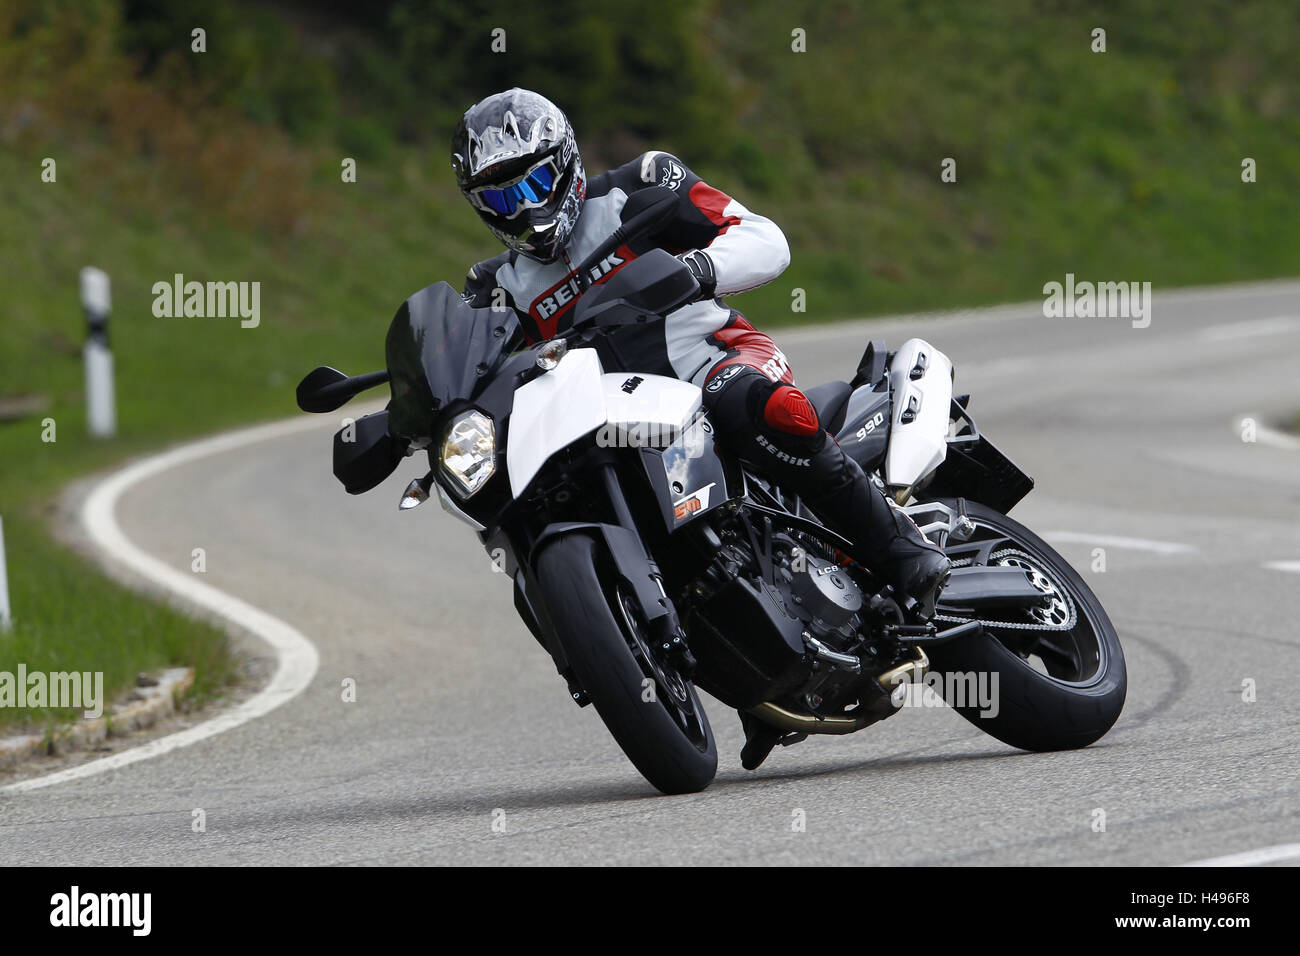 Motocycliste, KTM LC 8990, Anbremsdrift, coudes, route de campagne, de façon dynamique, Banque D'Images